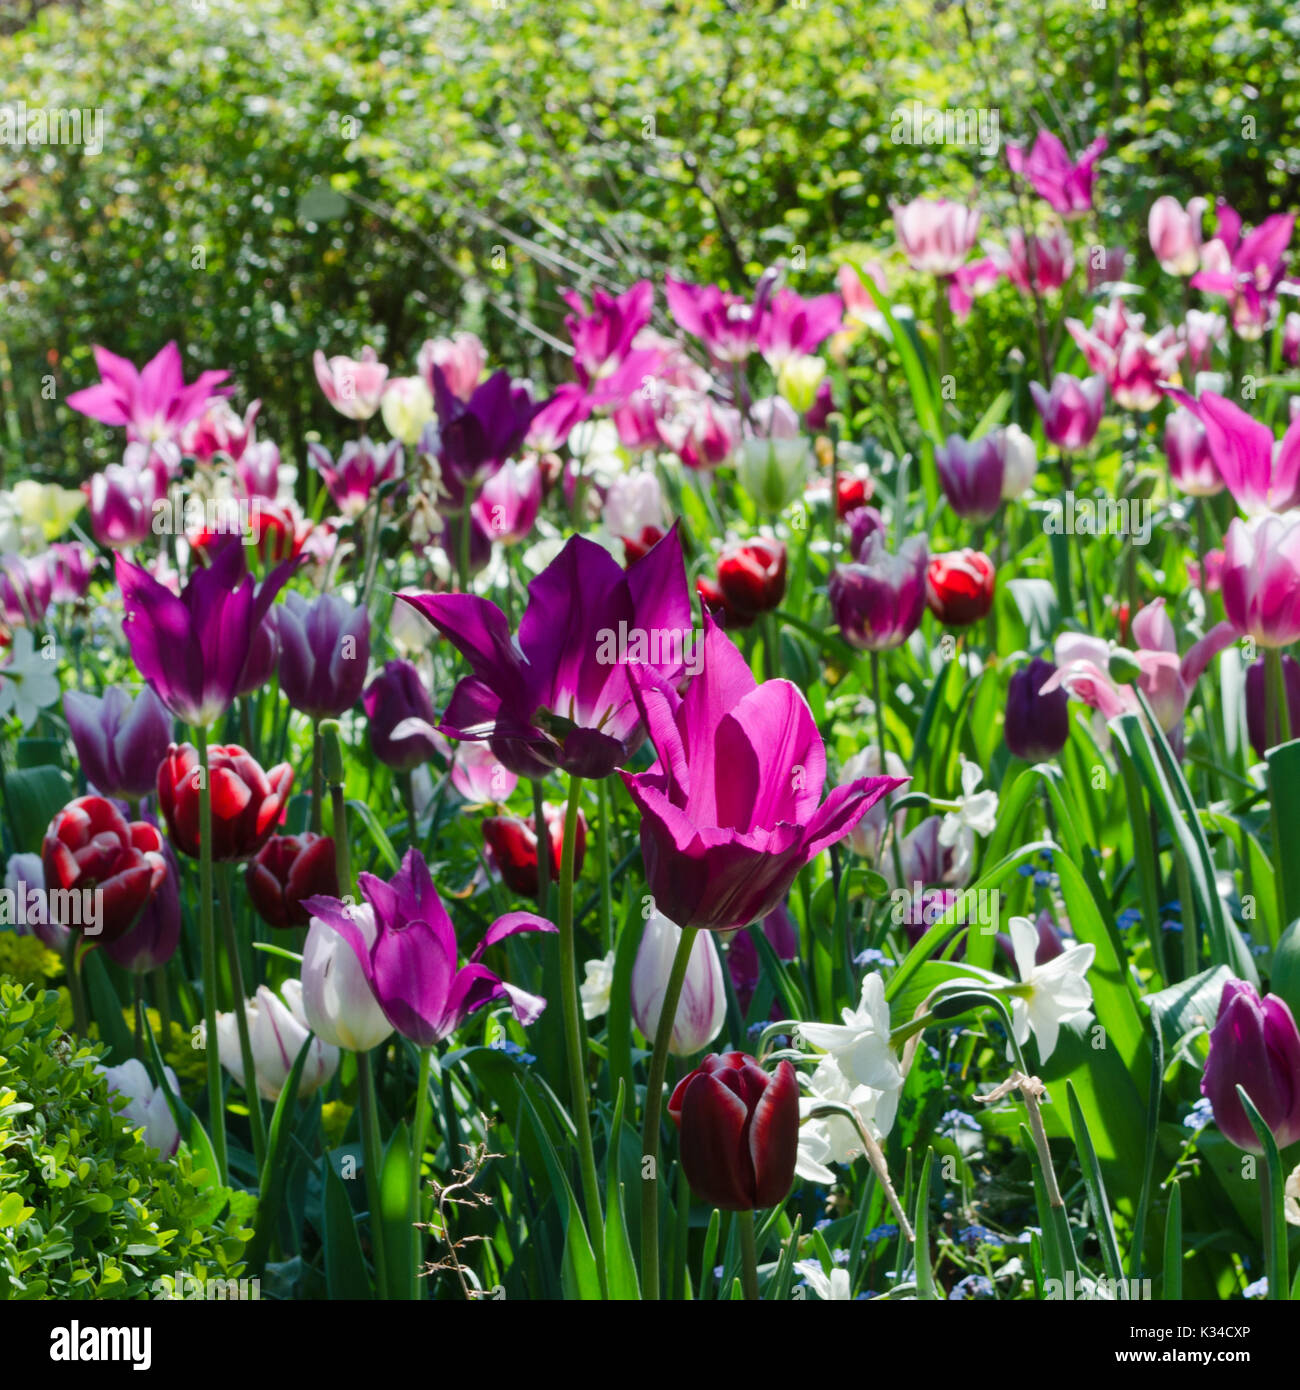 Garten mit Tulpen in mehreren Farben Stockfoto